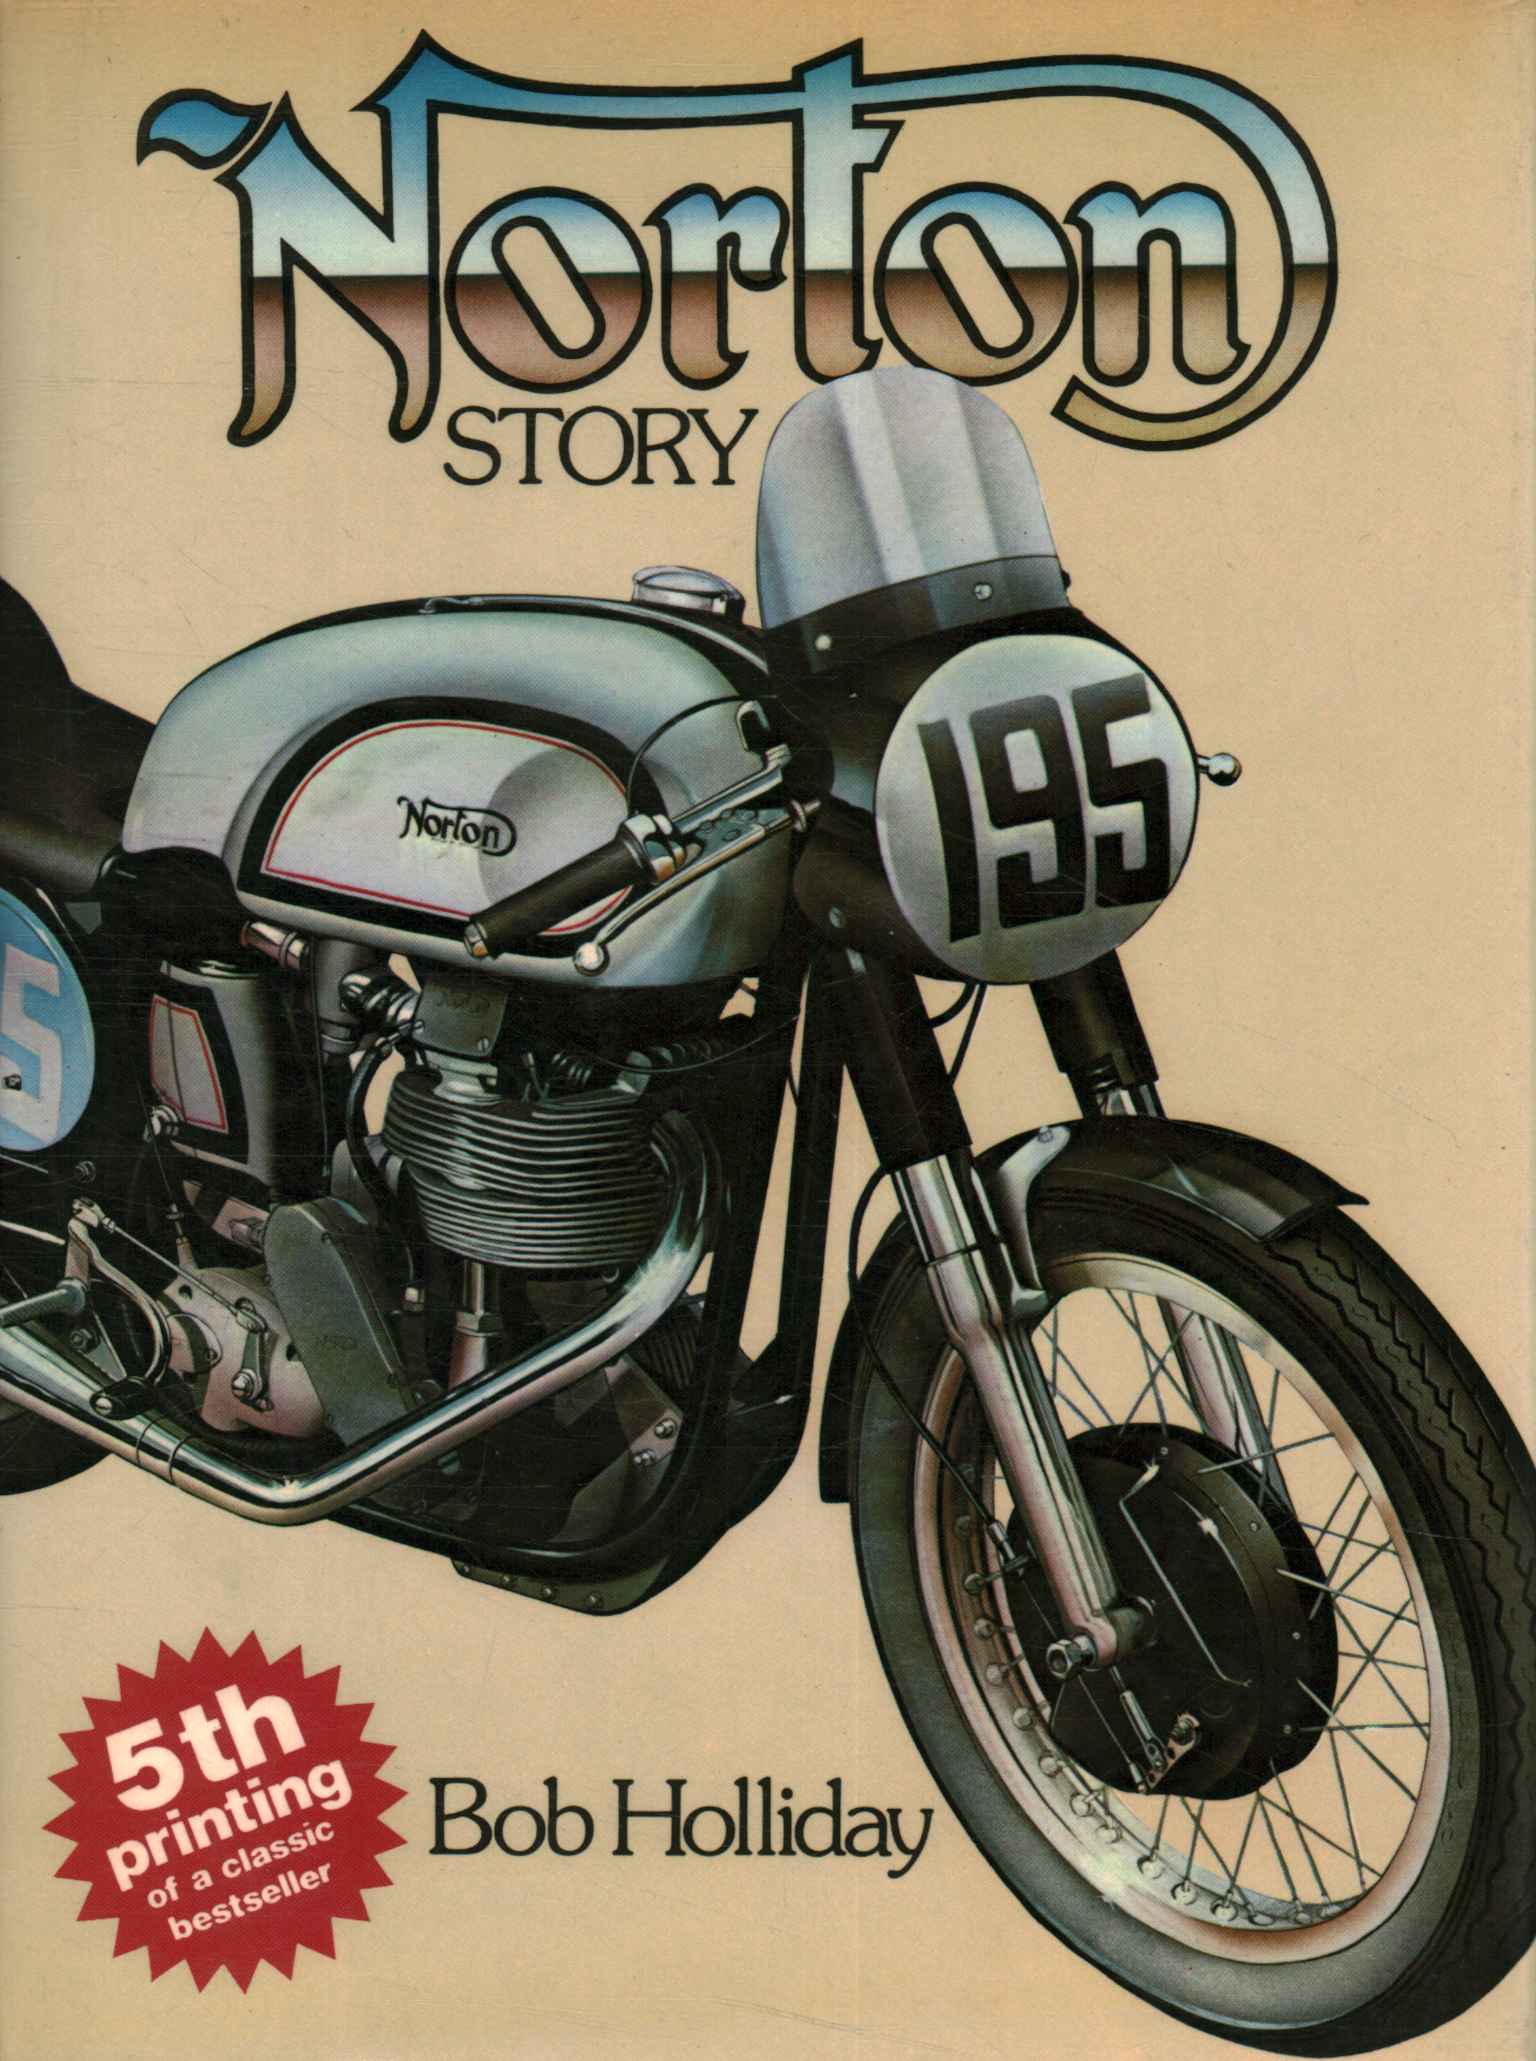 Historia de Norton